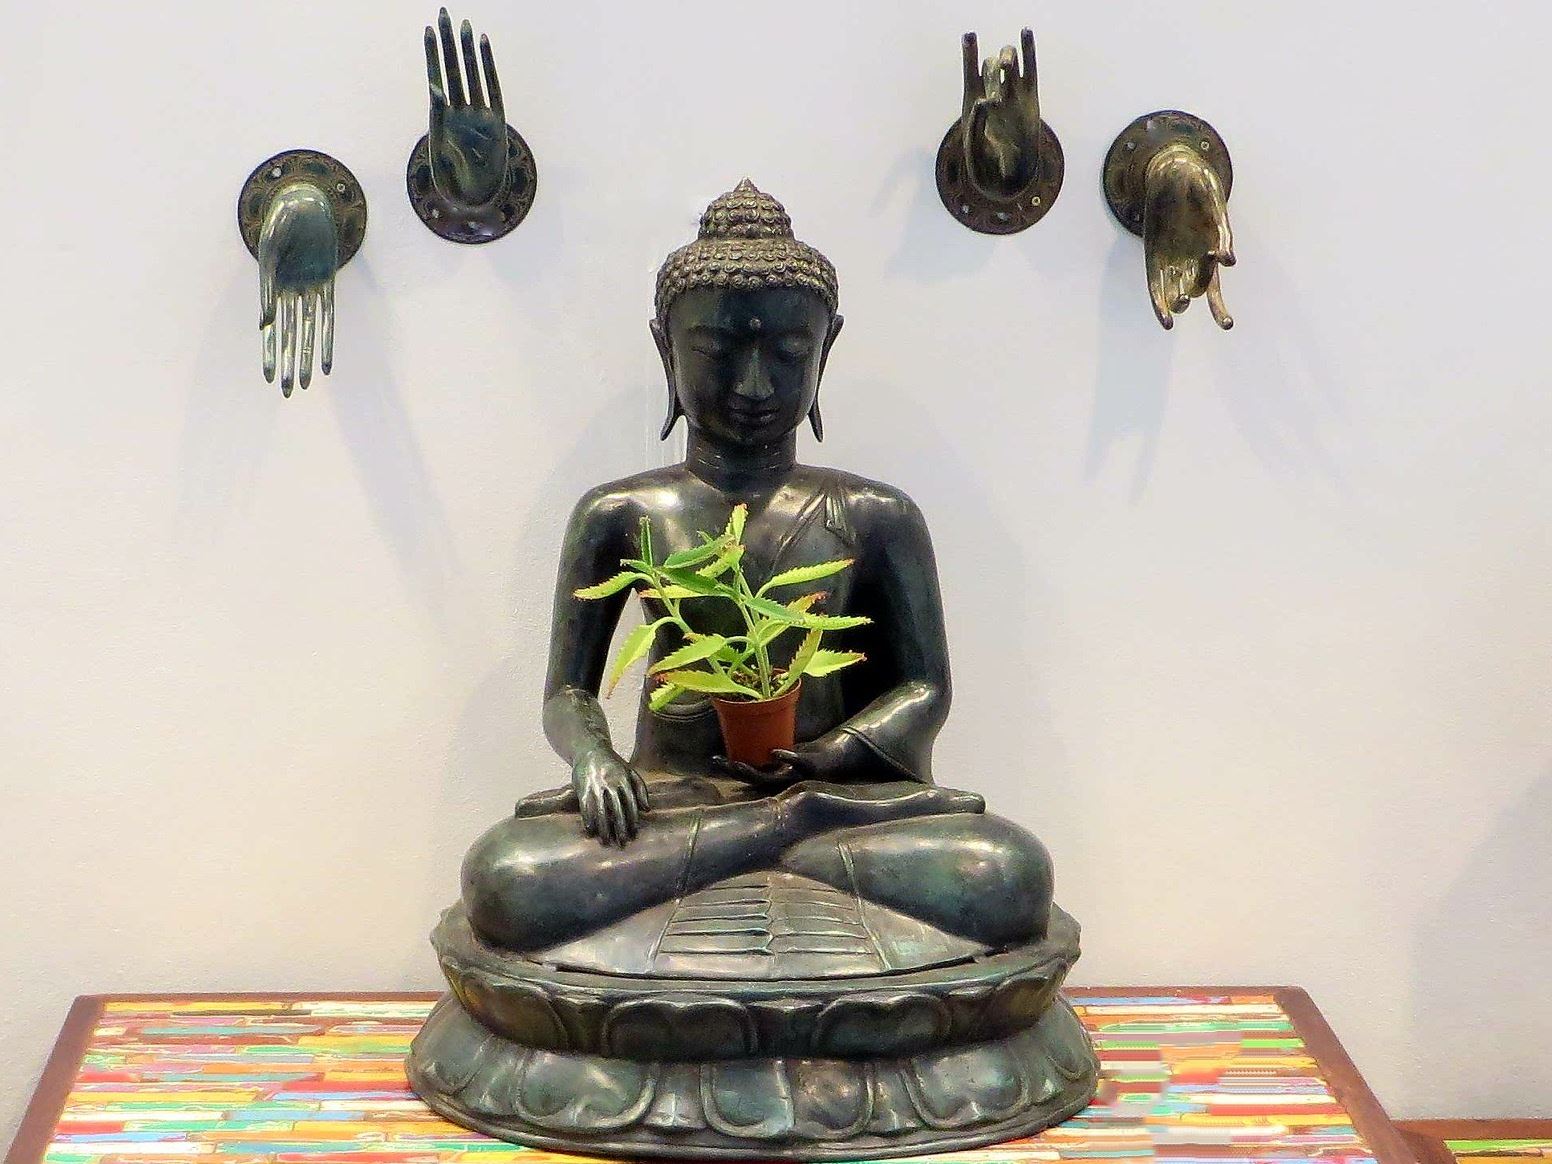  Händepositionen bei Buddha